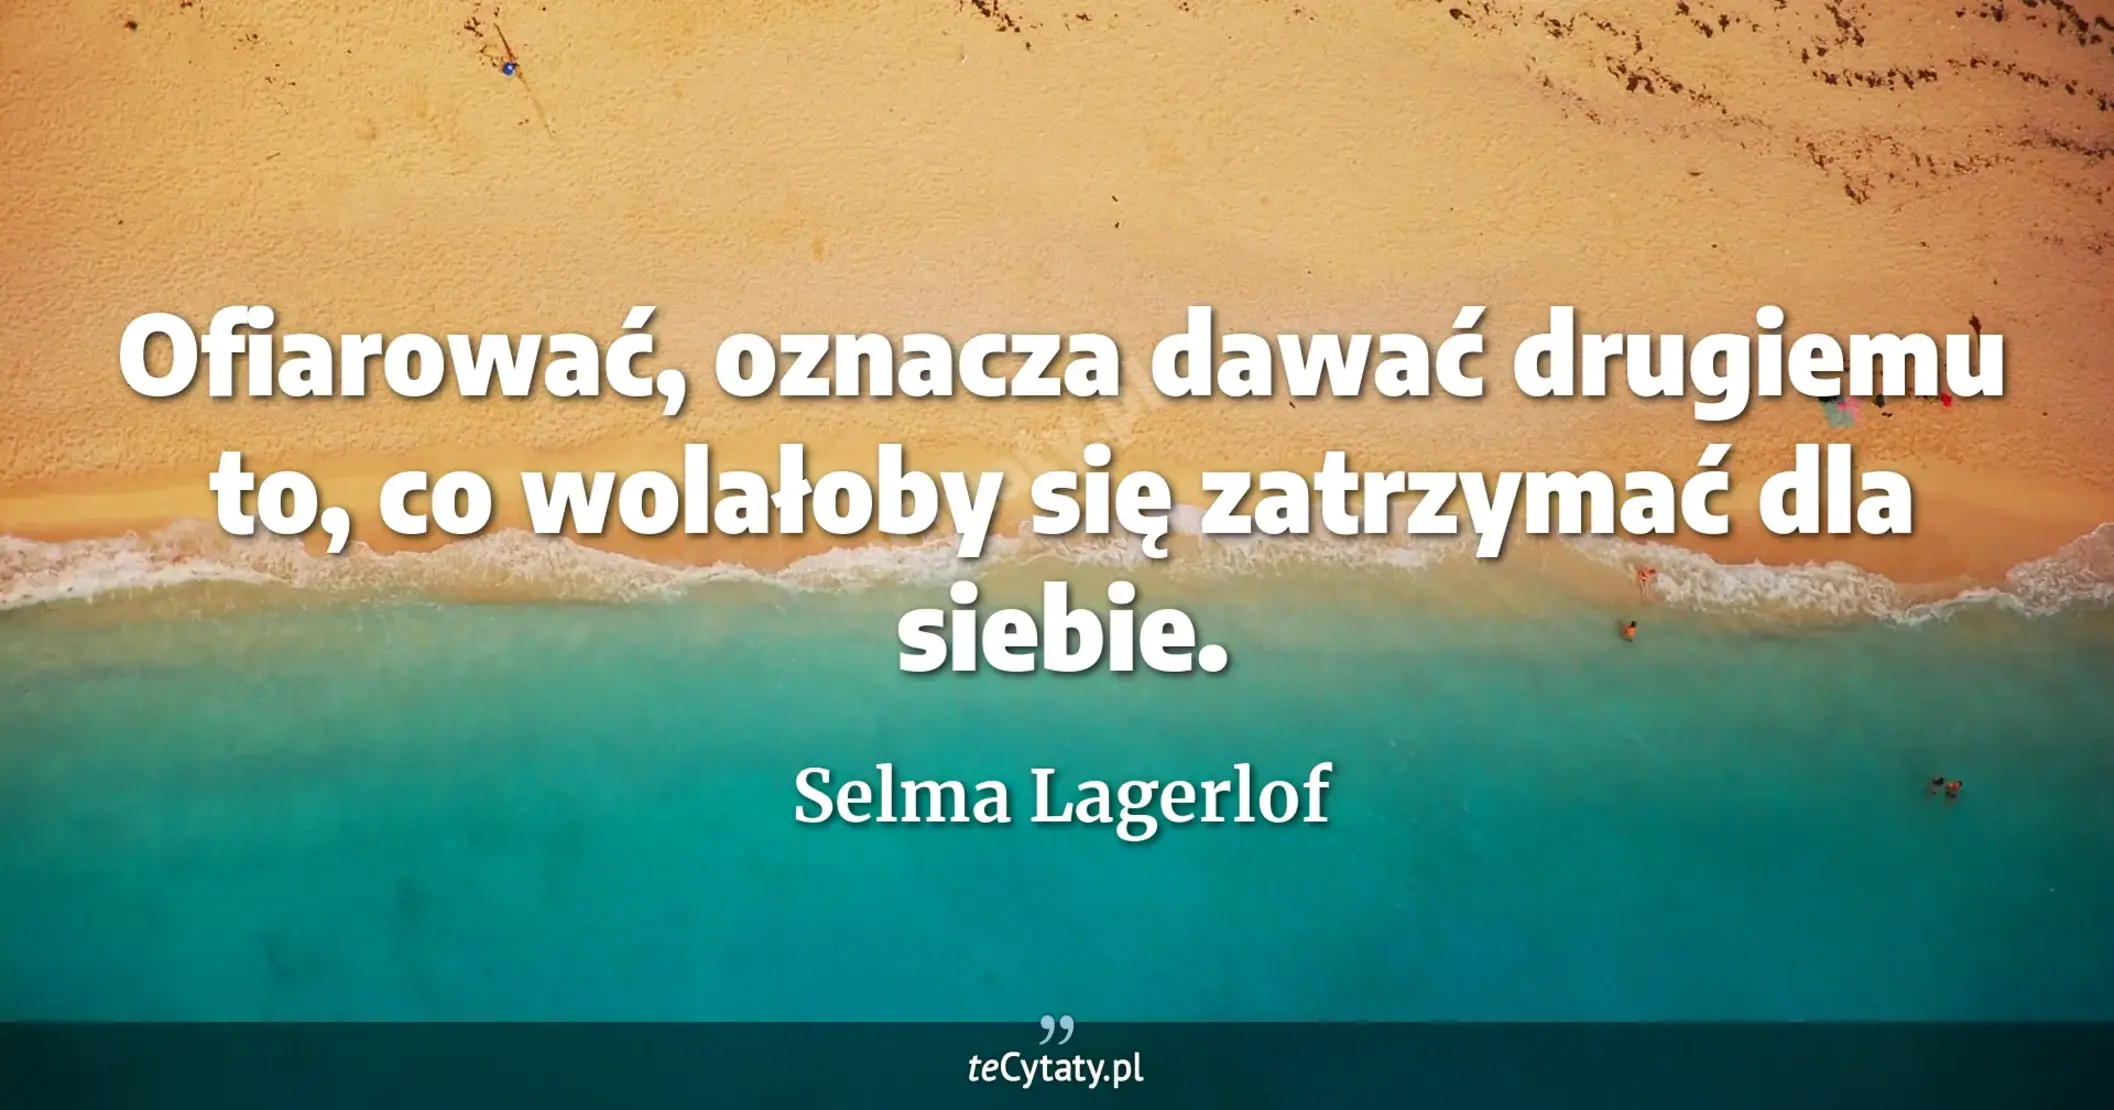 Ofiarować, oznacza dawać drugiemu to, co wolałoby się zatrzymać dla siebie. - Selma Lagerlof